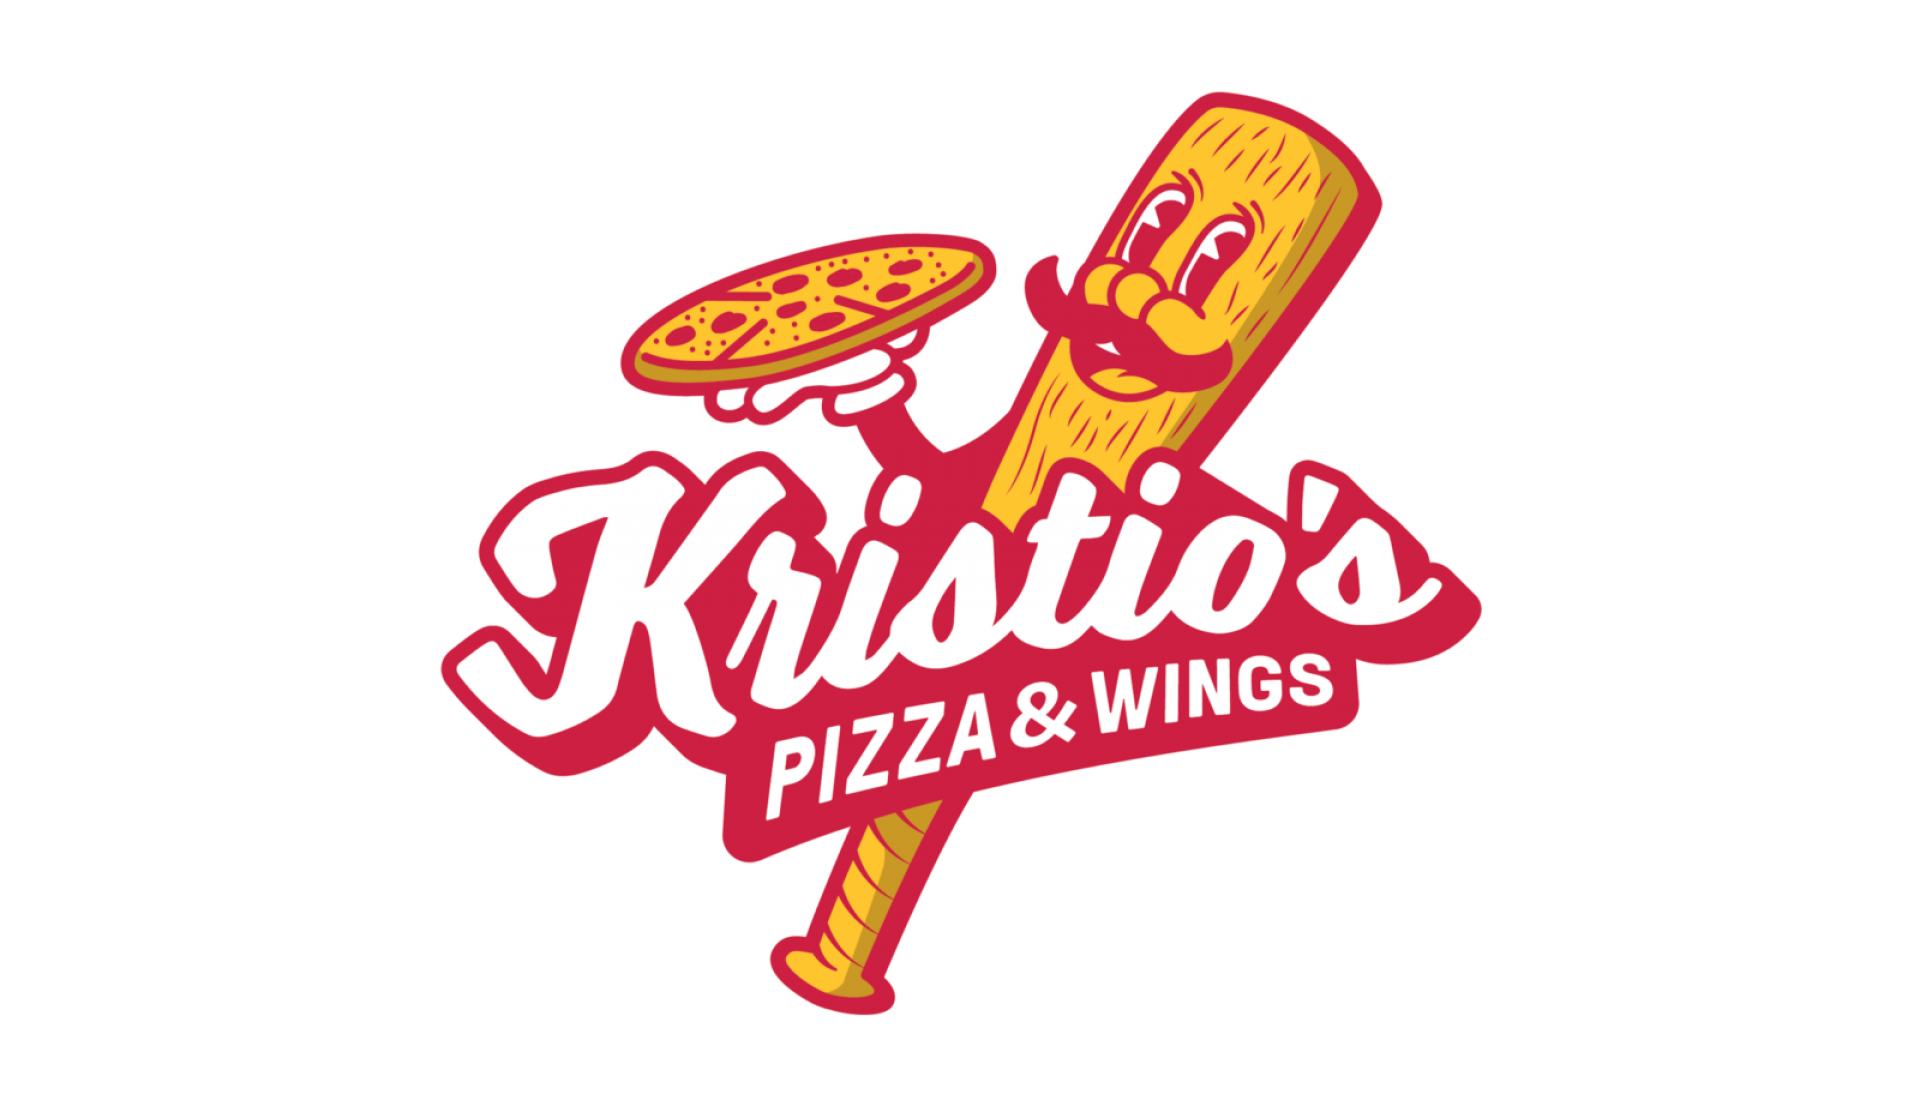 graphic of Kristios fake pizzeria